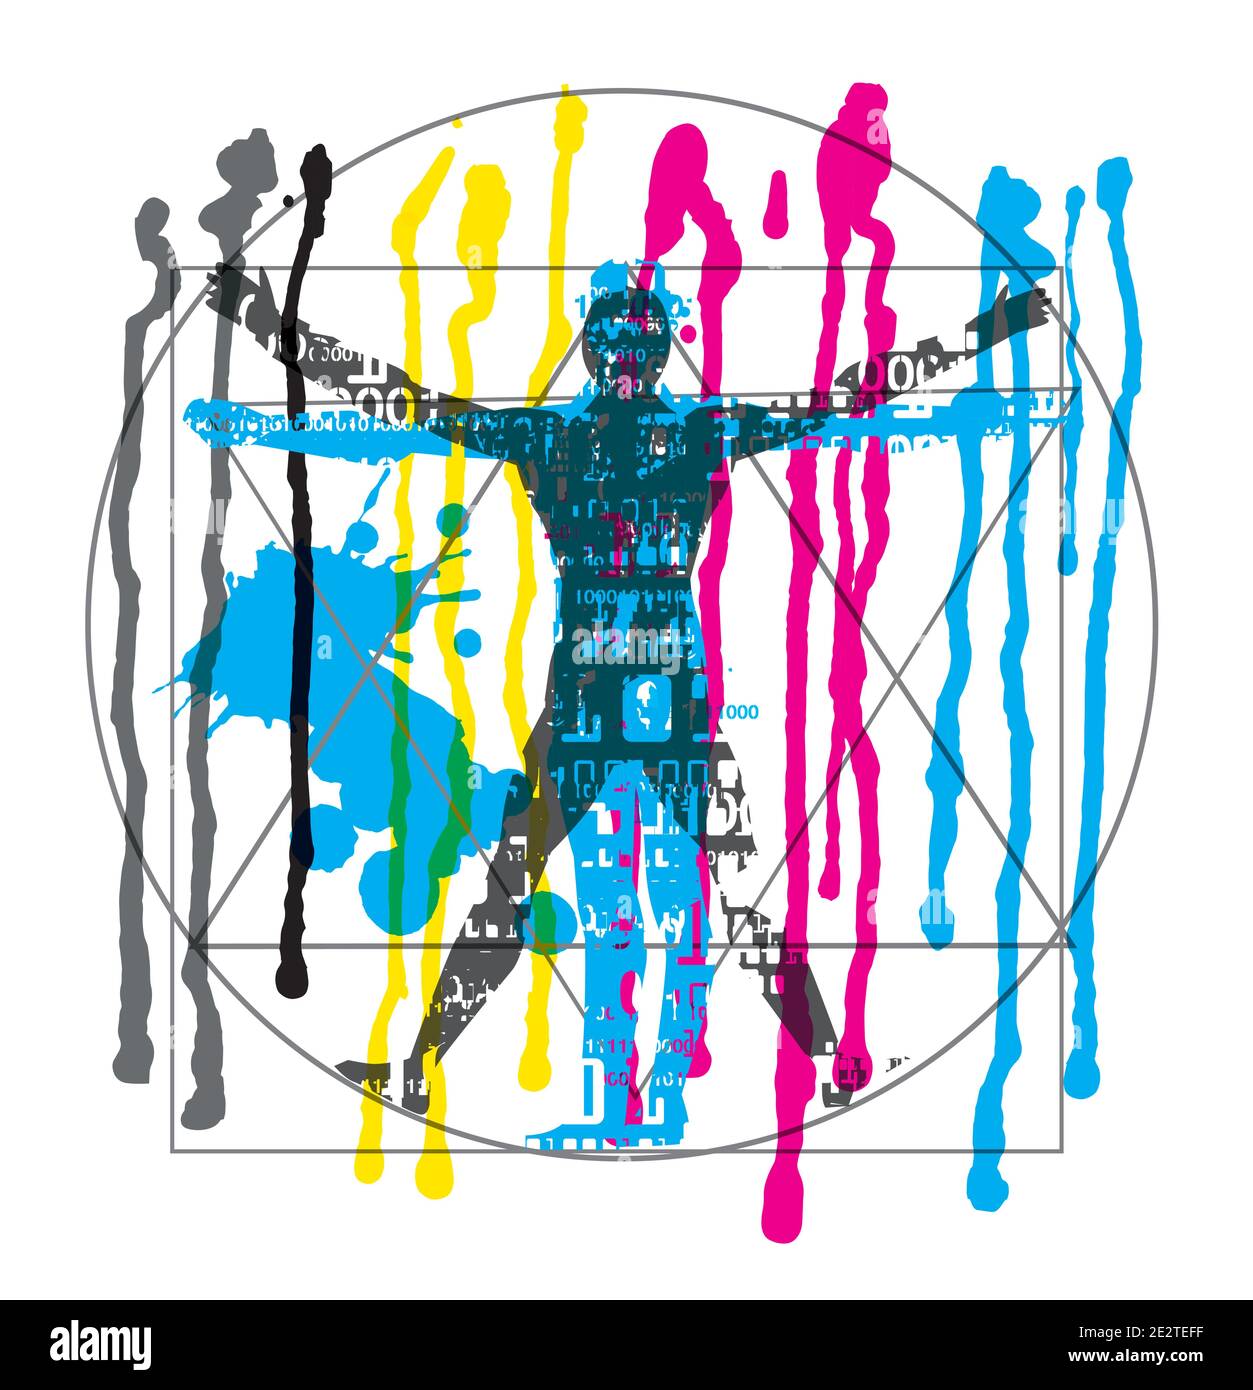 Uomo vitruviano con codici binari, Flowing Paint, colori CMYK. Illustrazione espressiva futuristica dell'uomo vitruviano con codici binari . Illustrazione Vettoriale